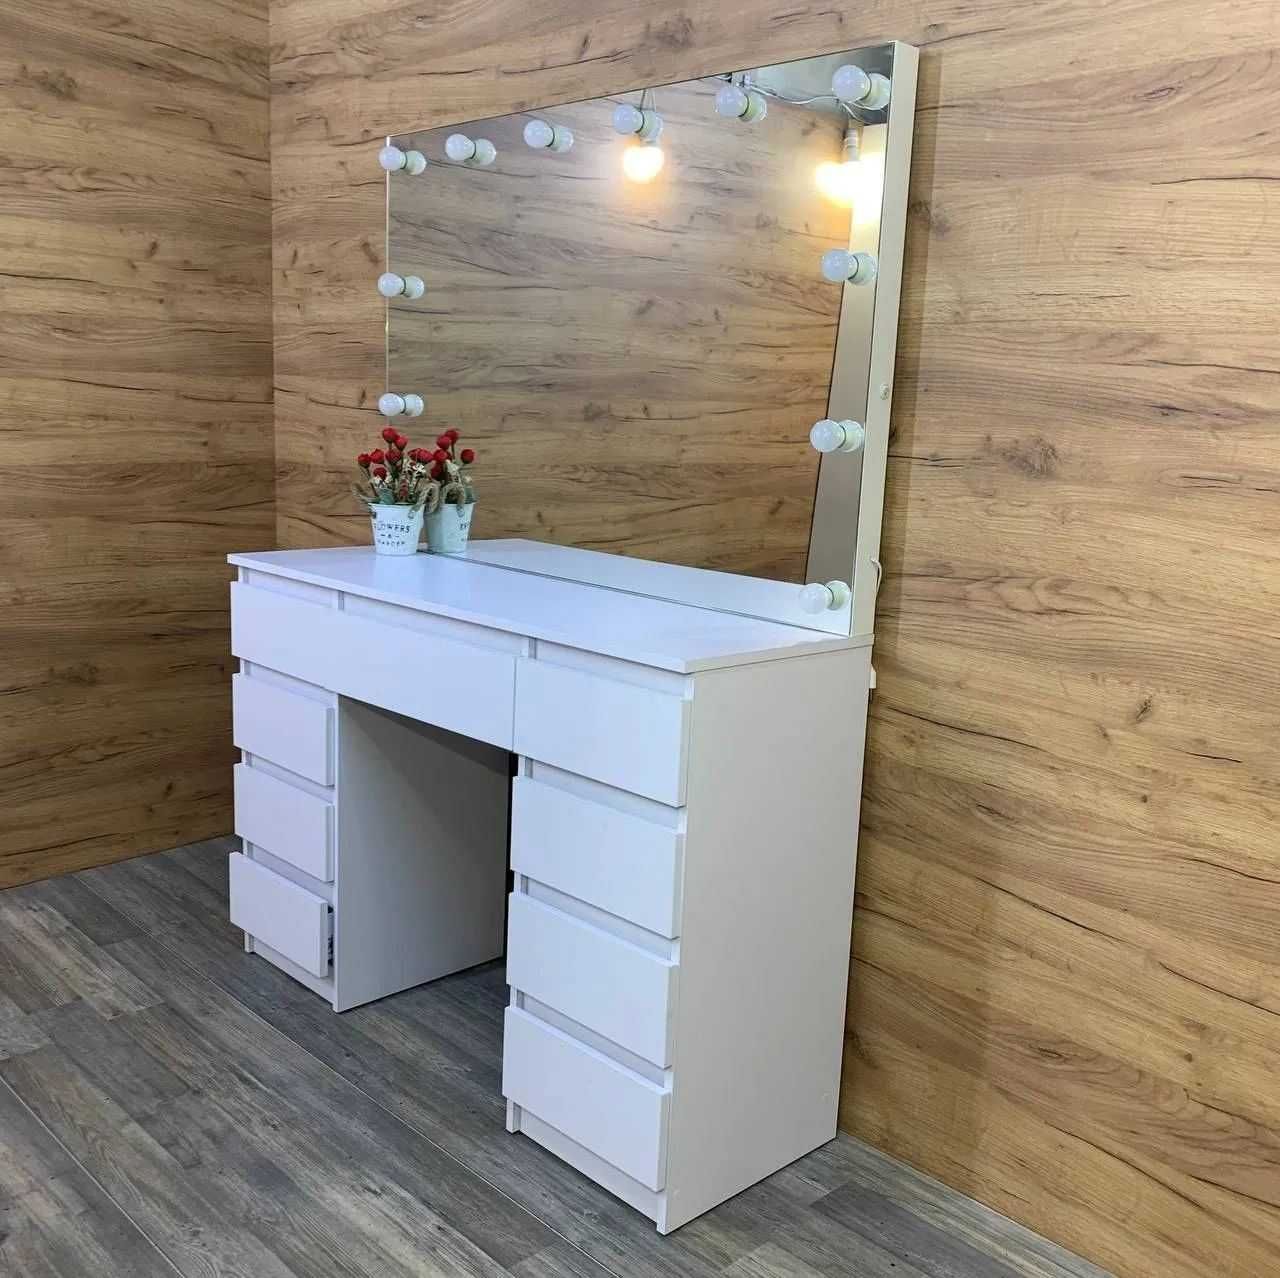 Туалетний столик з безрамним дзеркалом, гримерный косметический стол